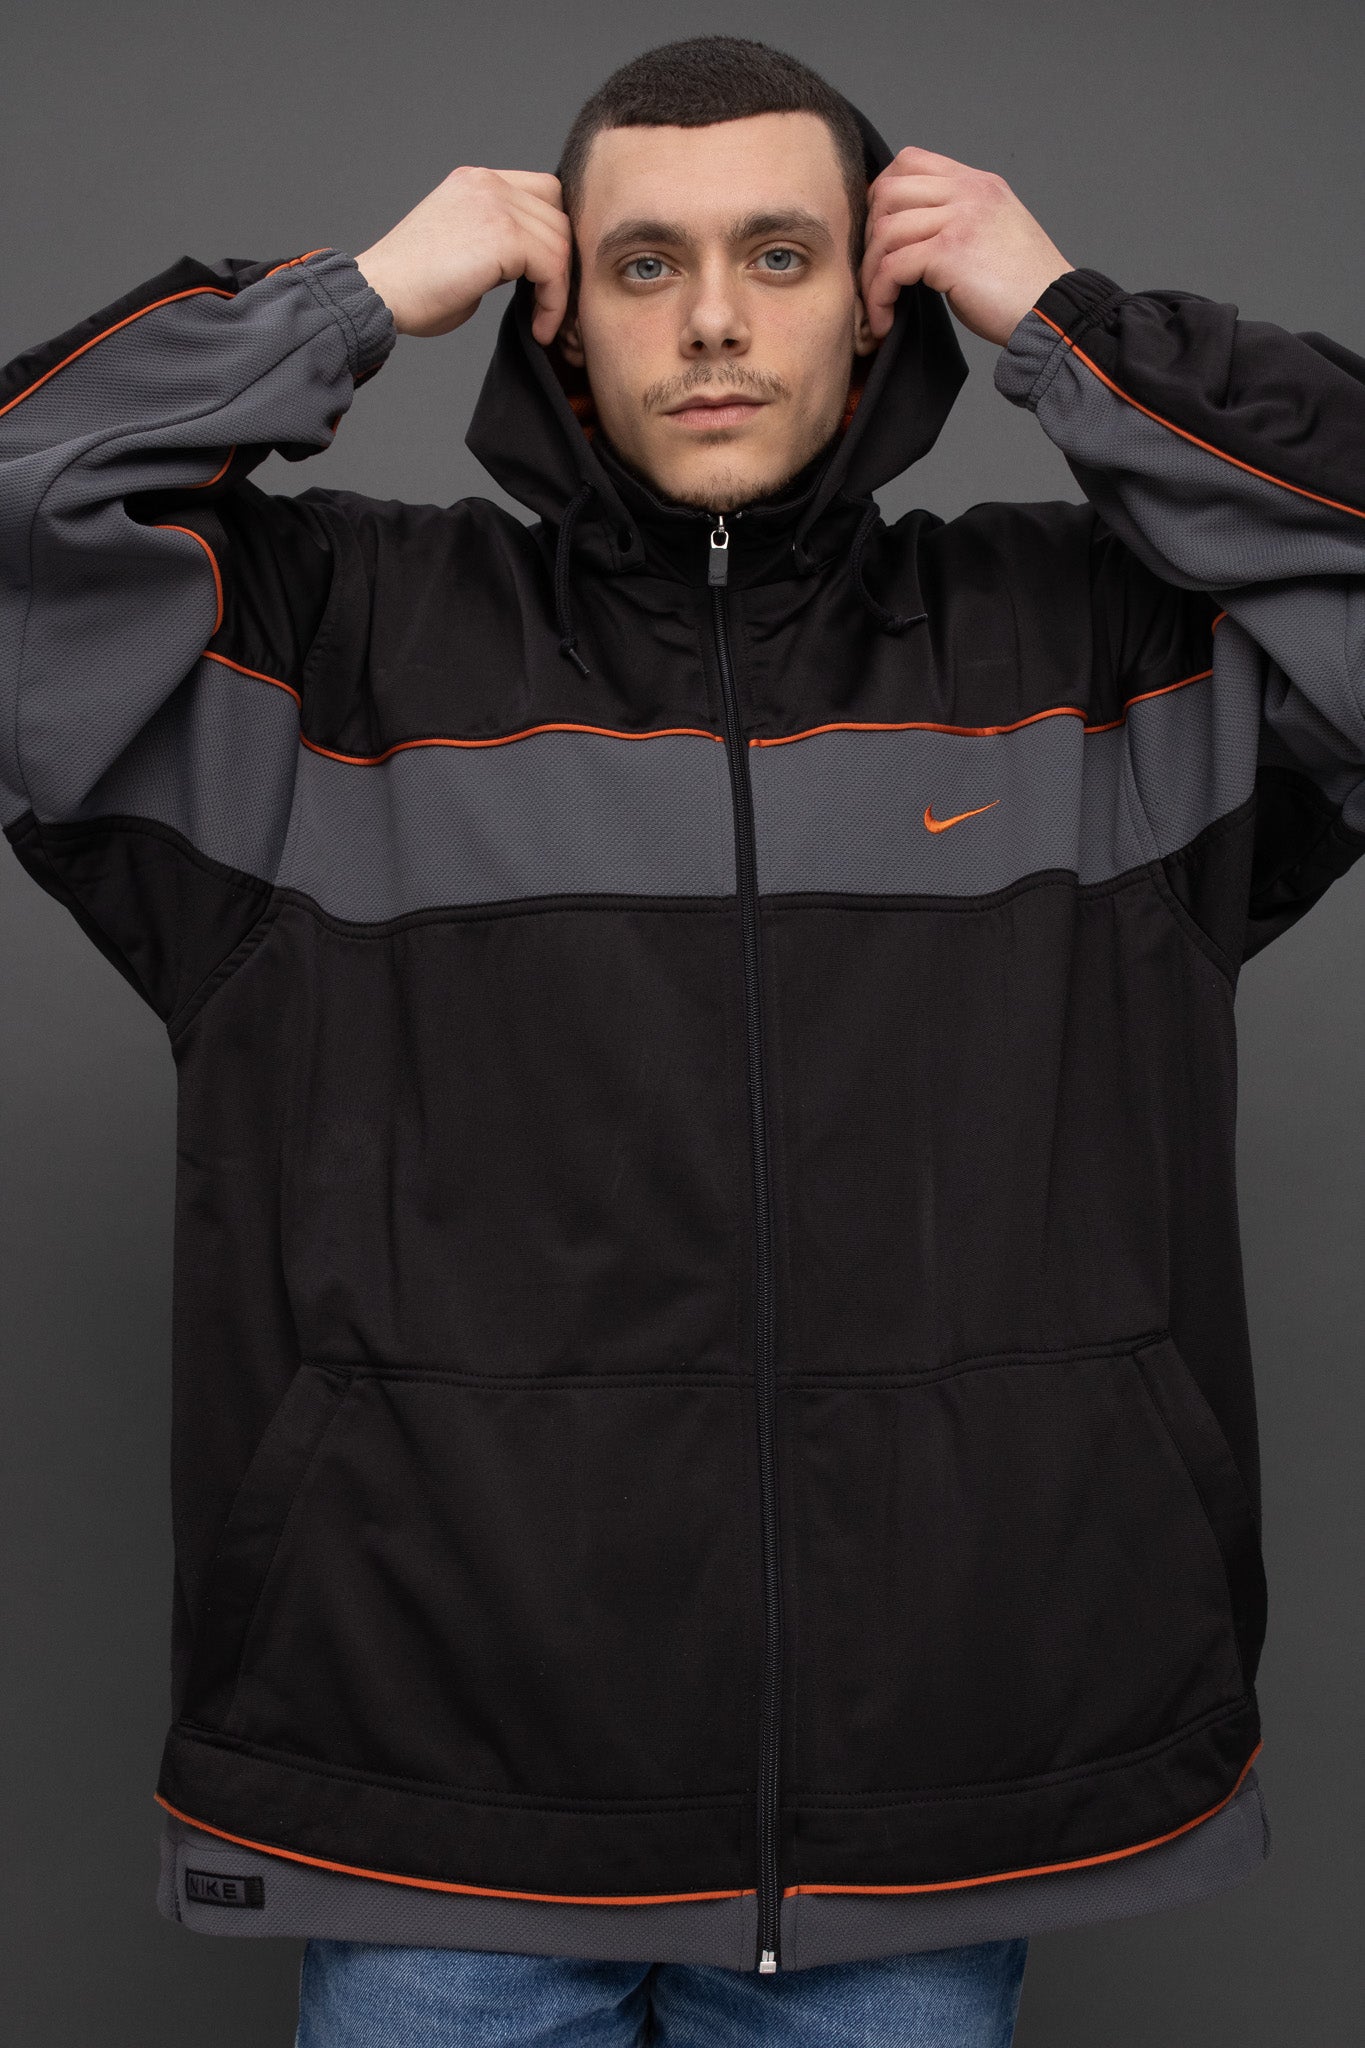 Nike athletic jacket